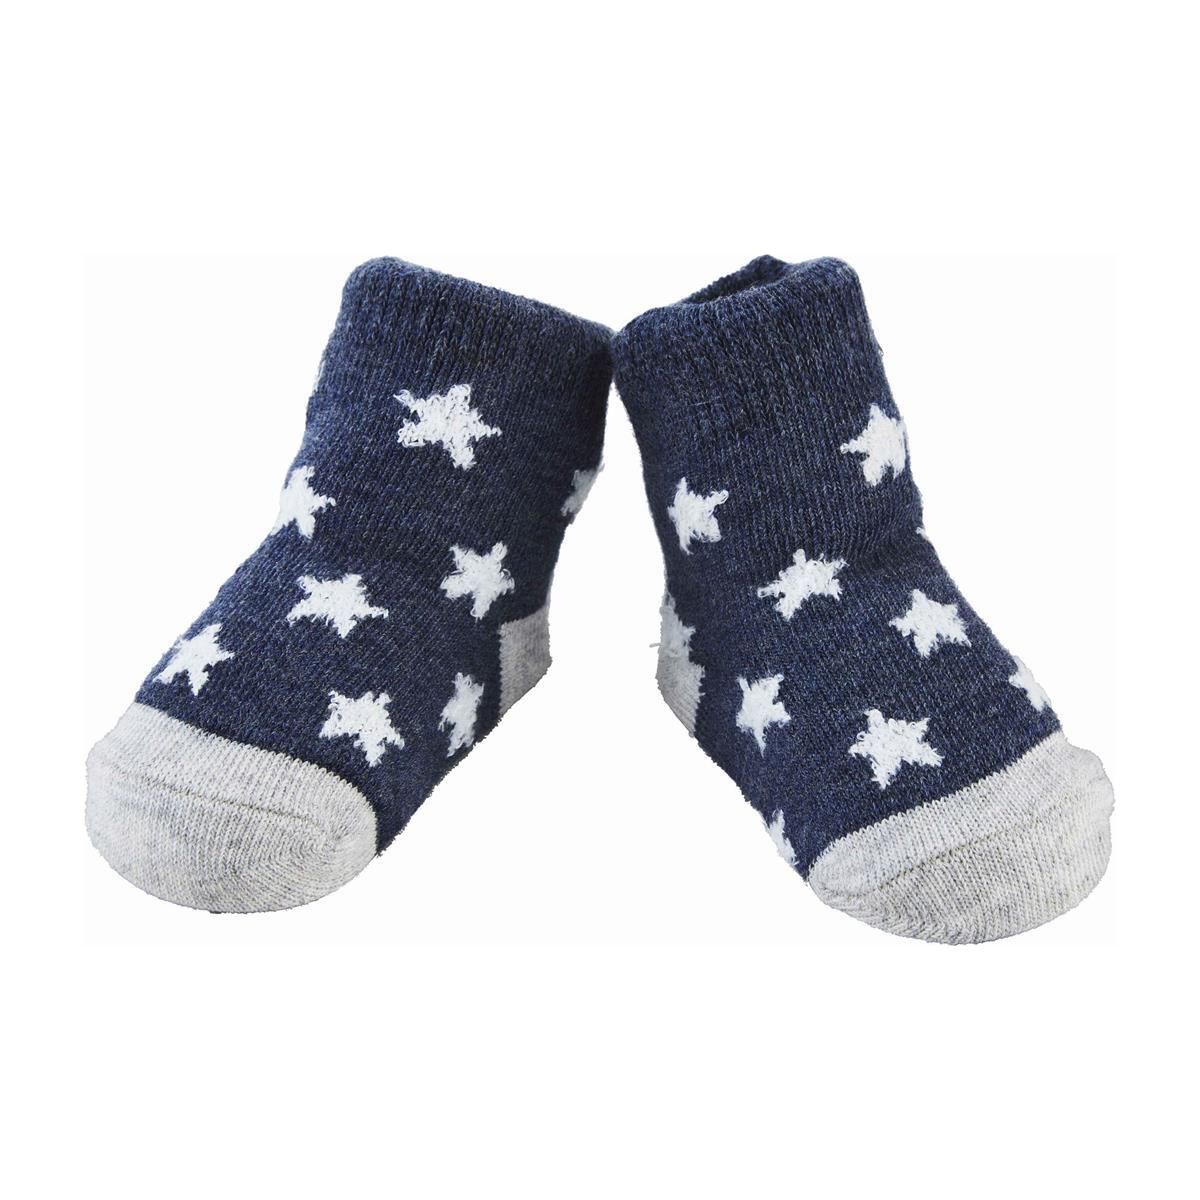 Navy Star Baby Socks